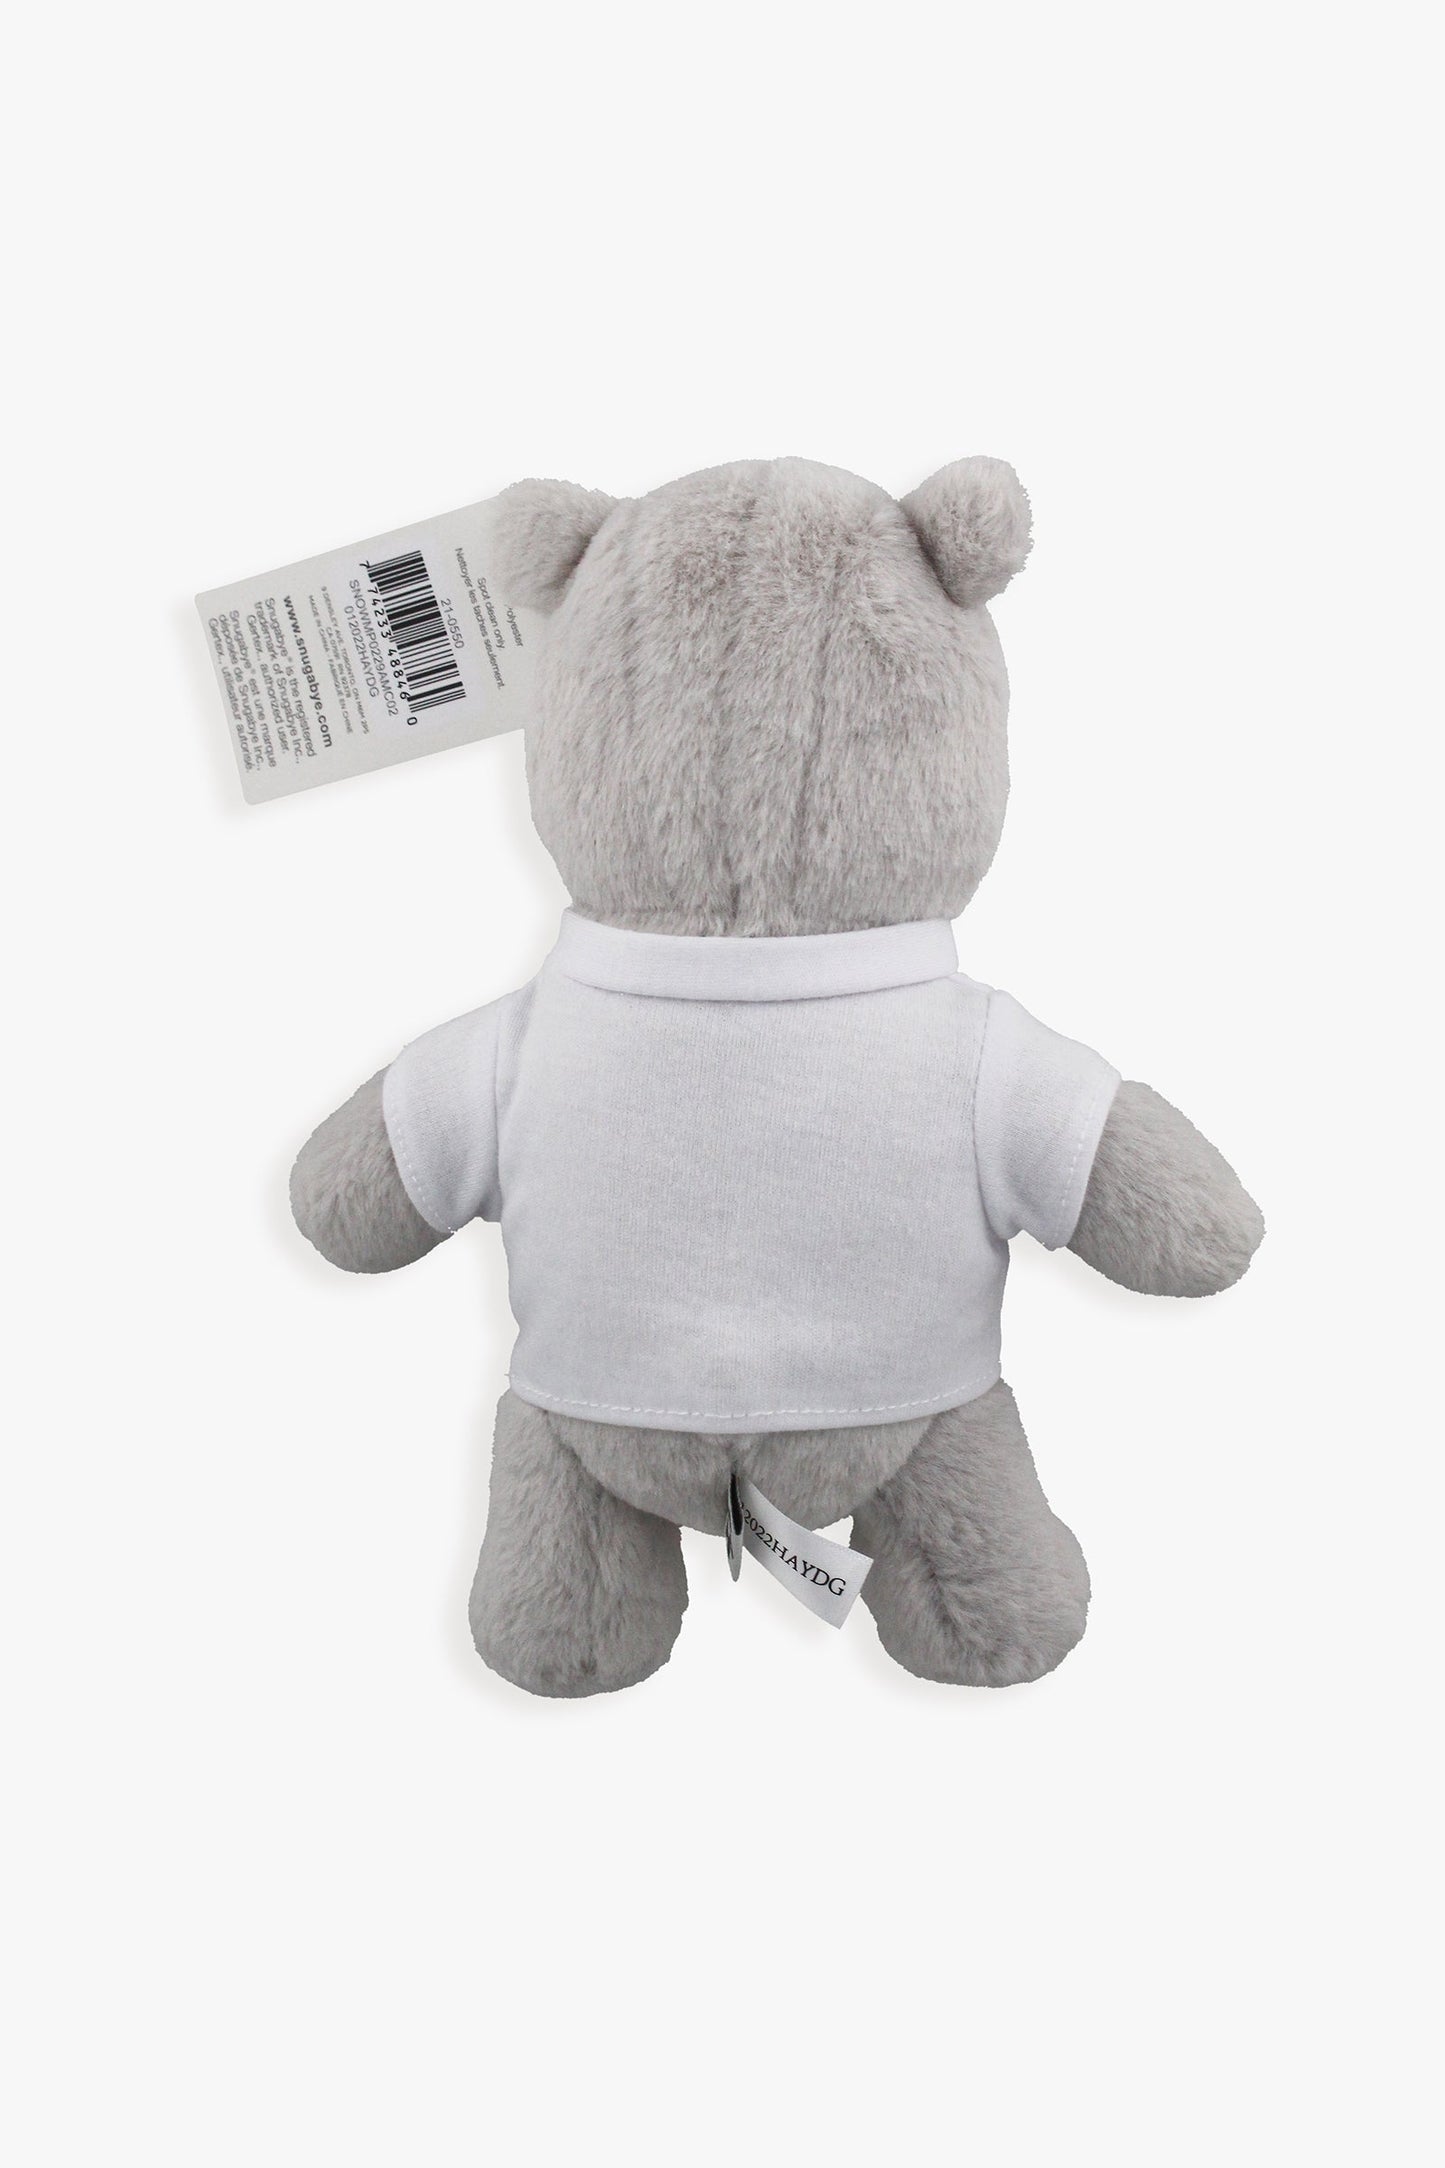 Customizable Plush Teddy Bear